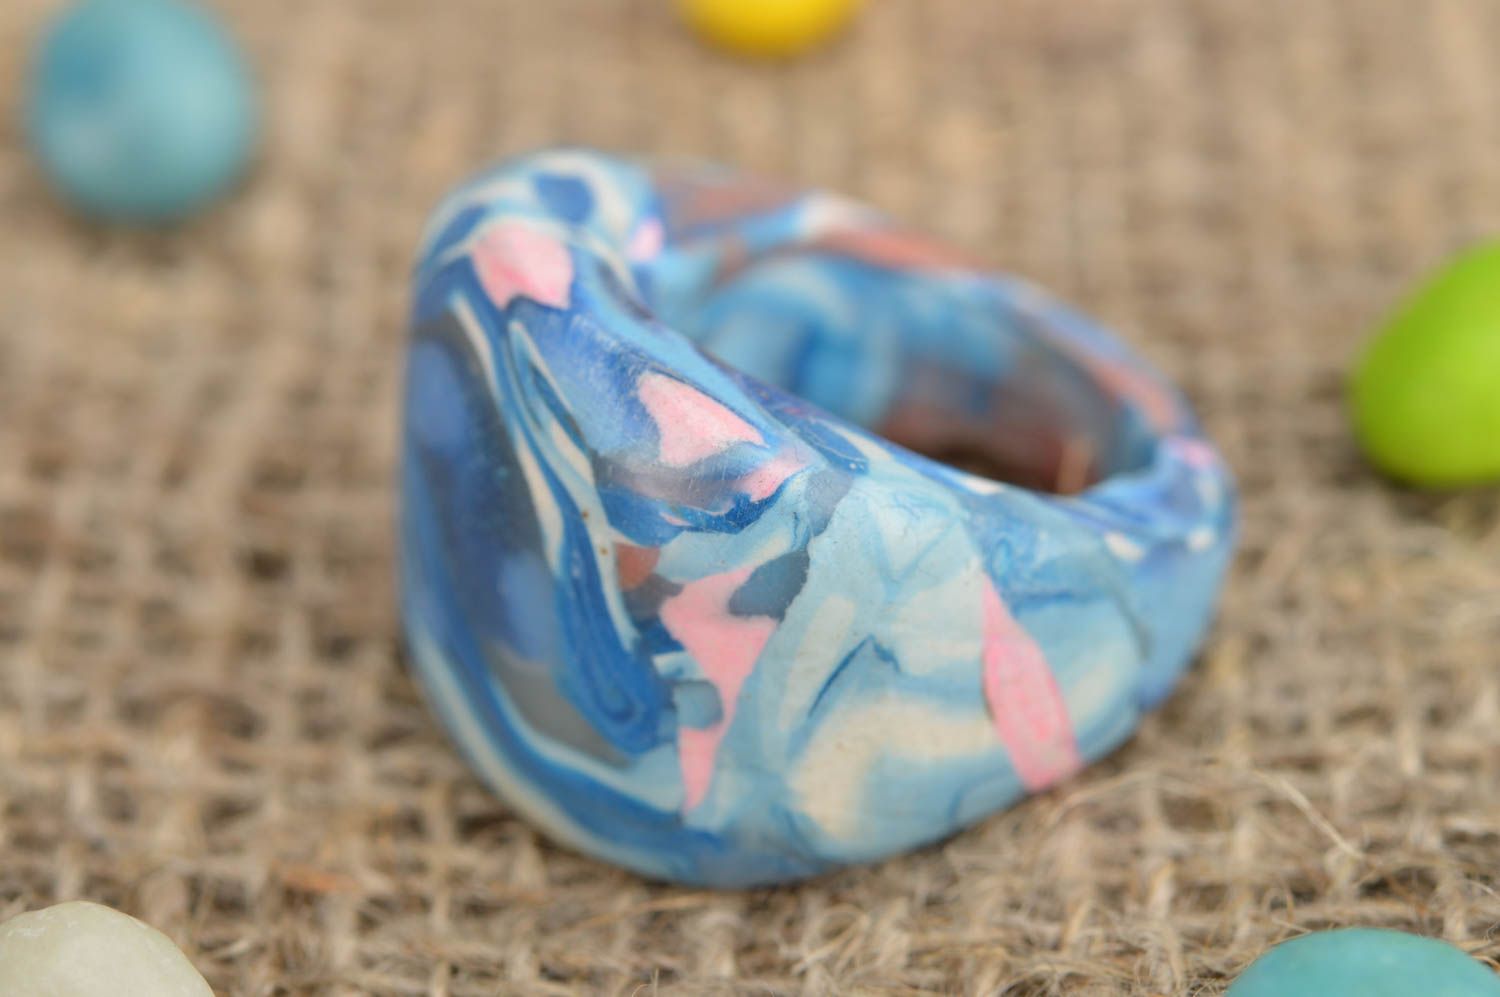 Оригинальное кольцо ручной работы из полимерной глины в голубых тонах  фото 1